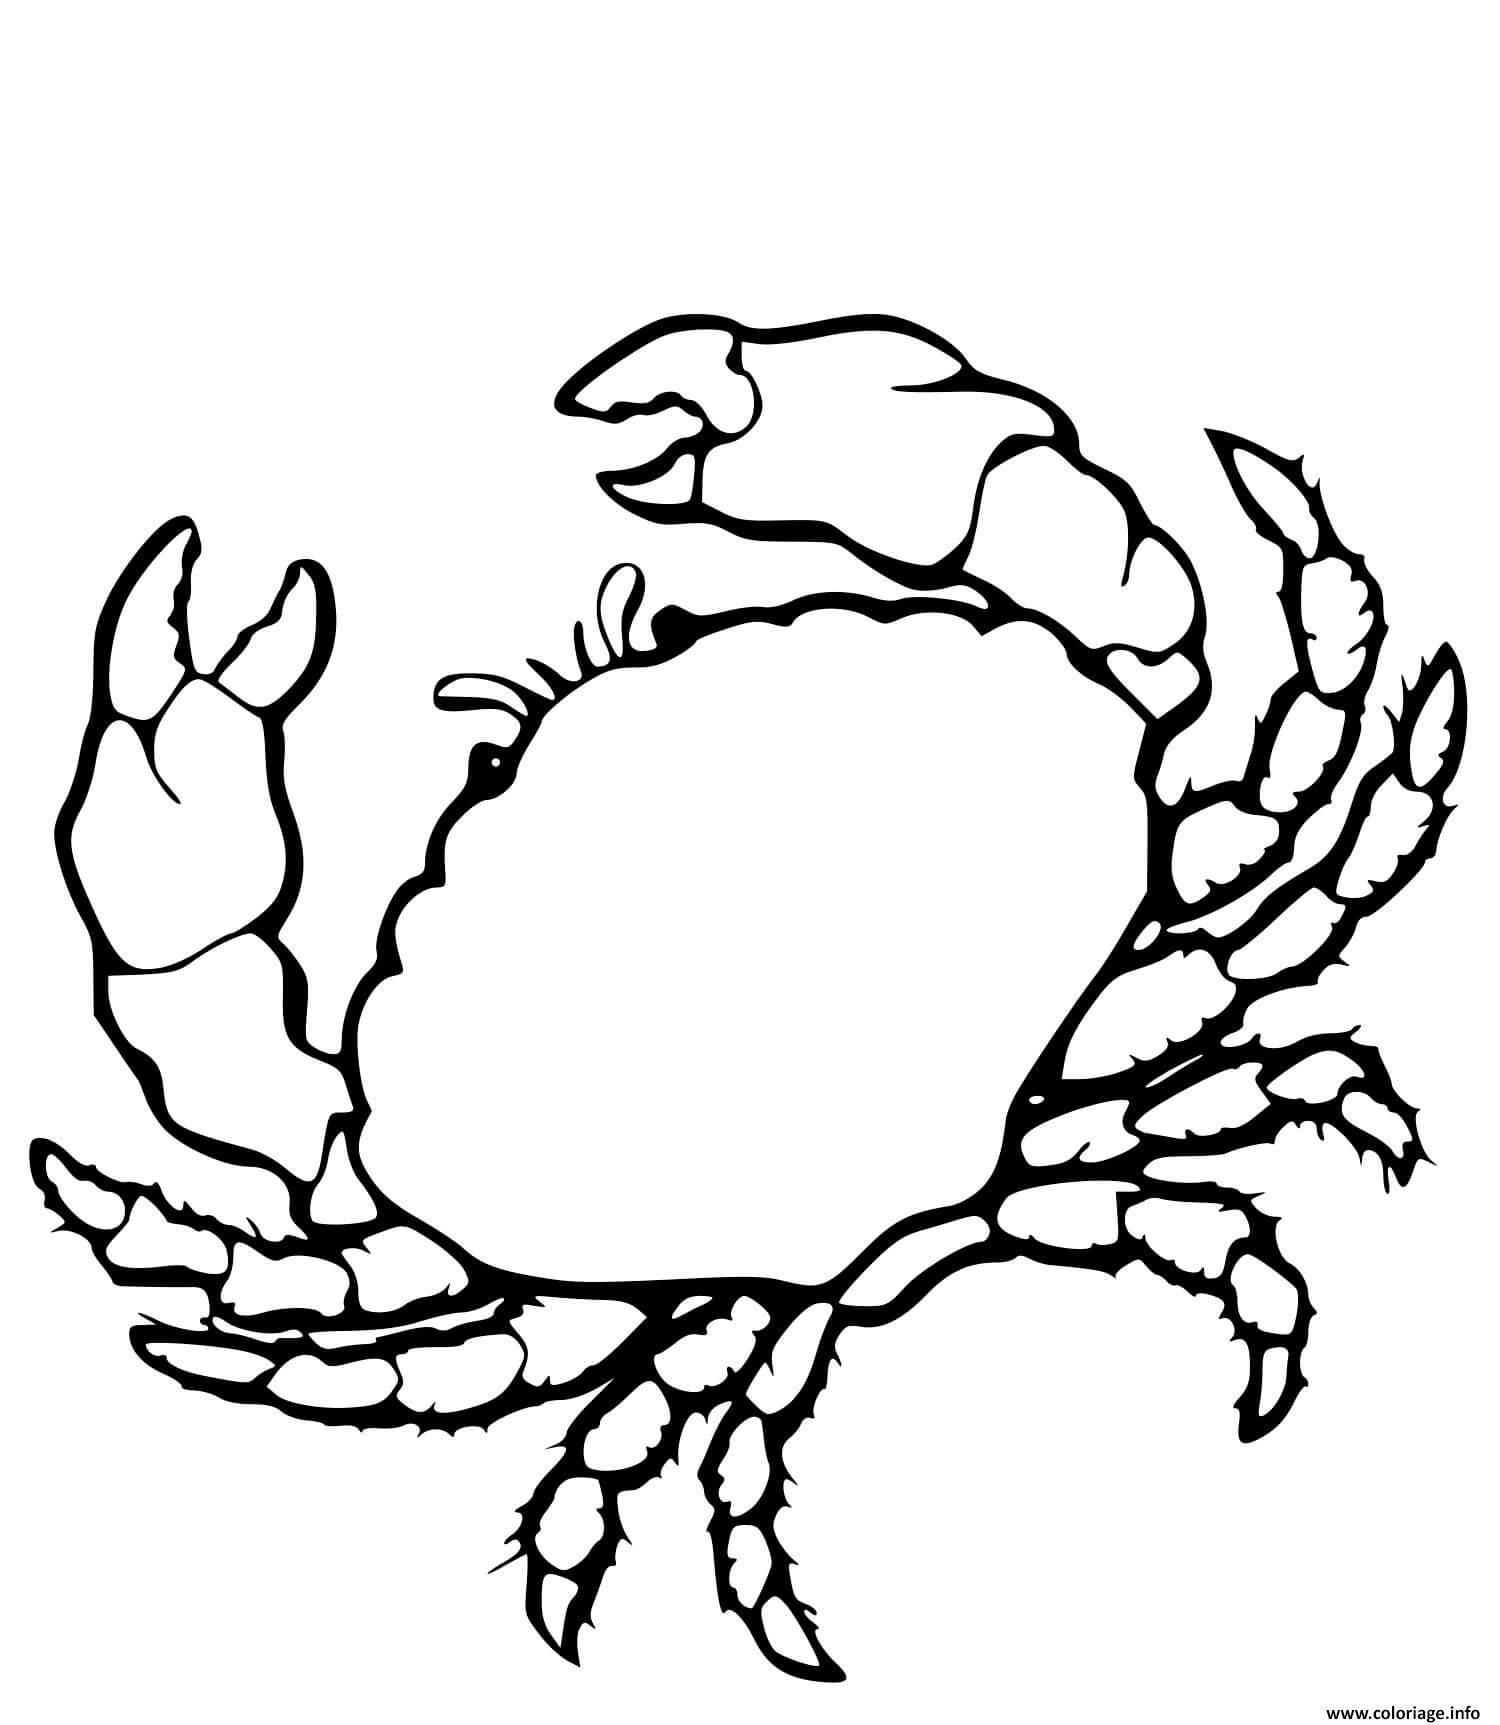 Dessin crabe realiste Coloriage Gratuit à Imprimer